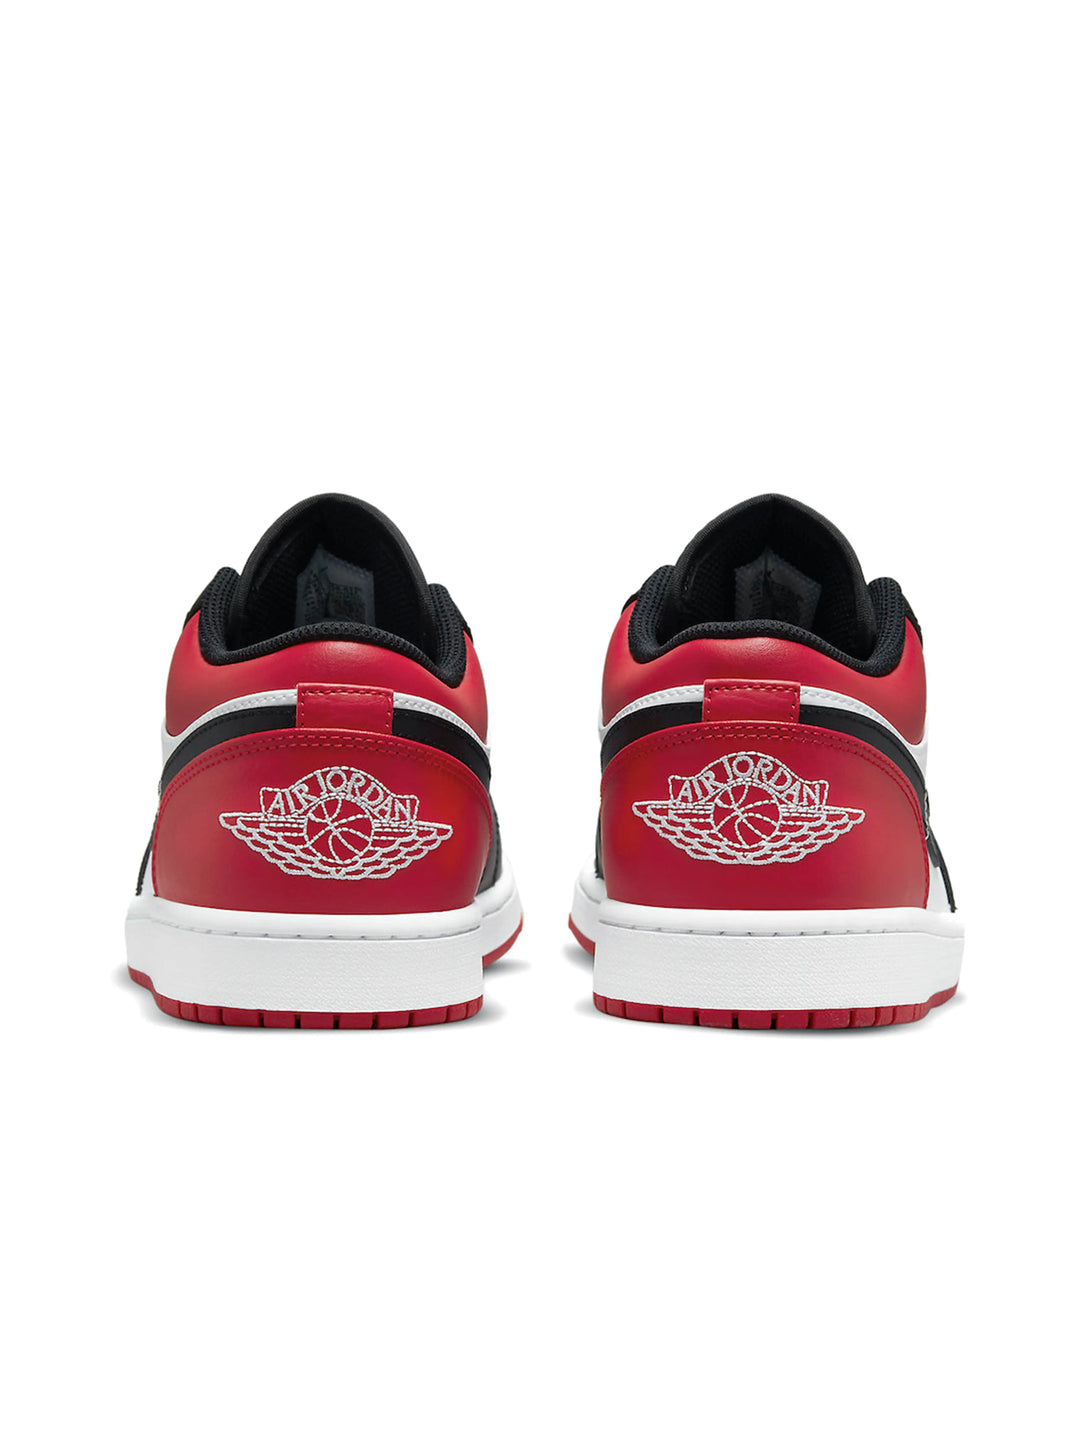 Nike Air Jordan 1 Low Bred Toe Prior